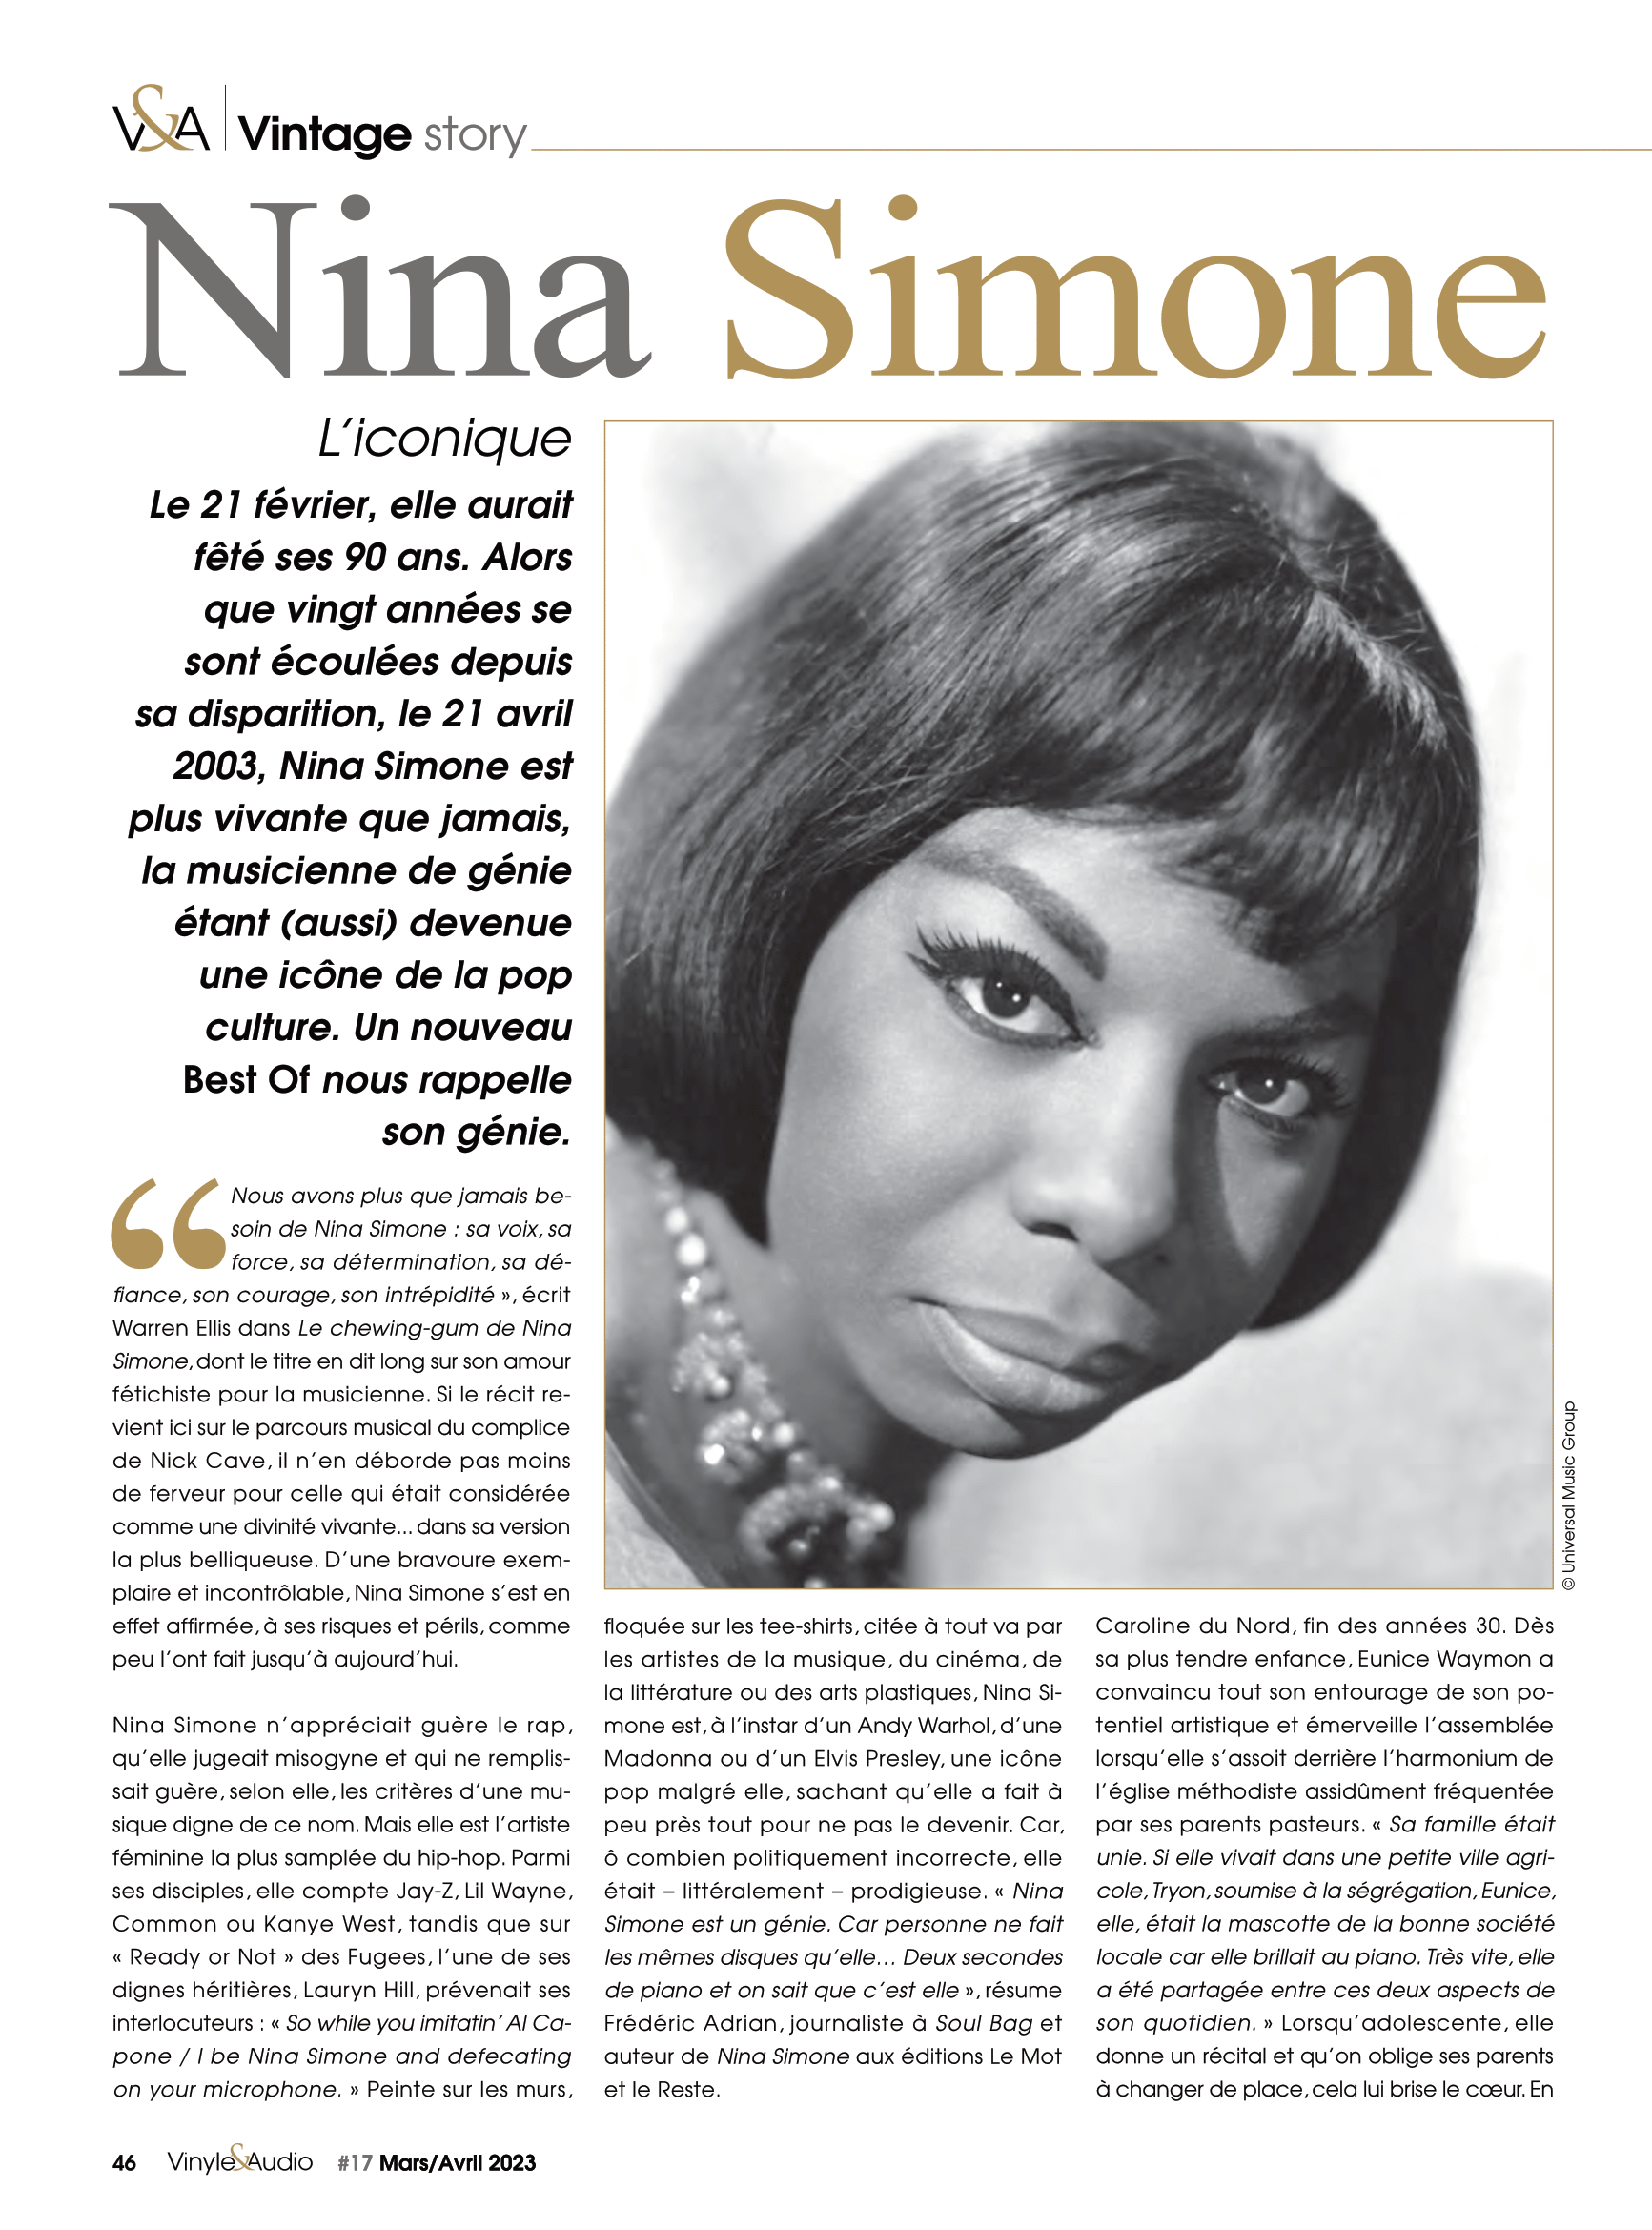 Vinyle & Audio n°17 : vintage story avec l'iconique Nina Simone